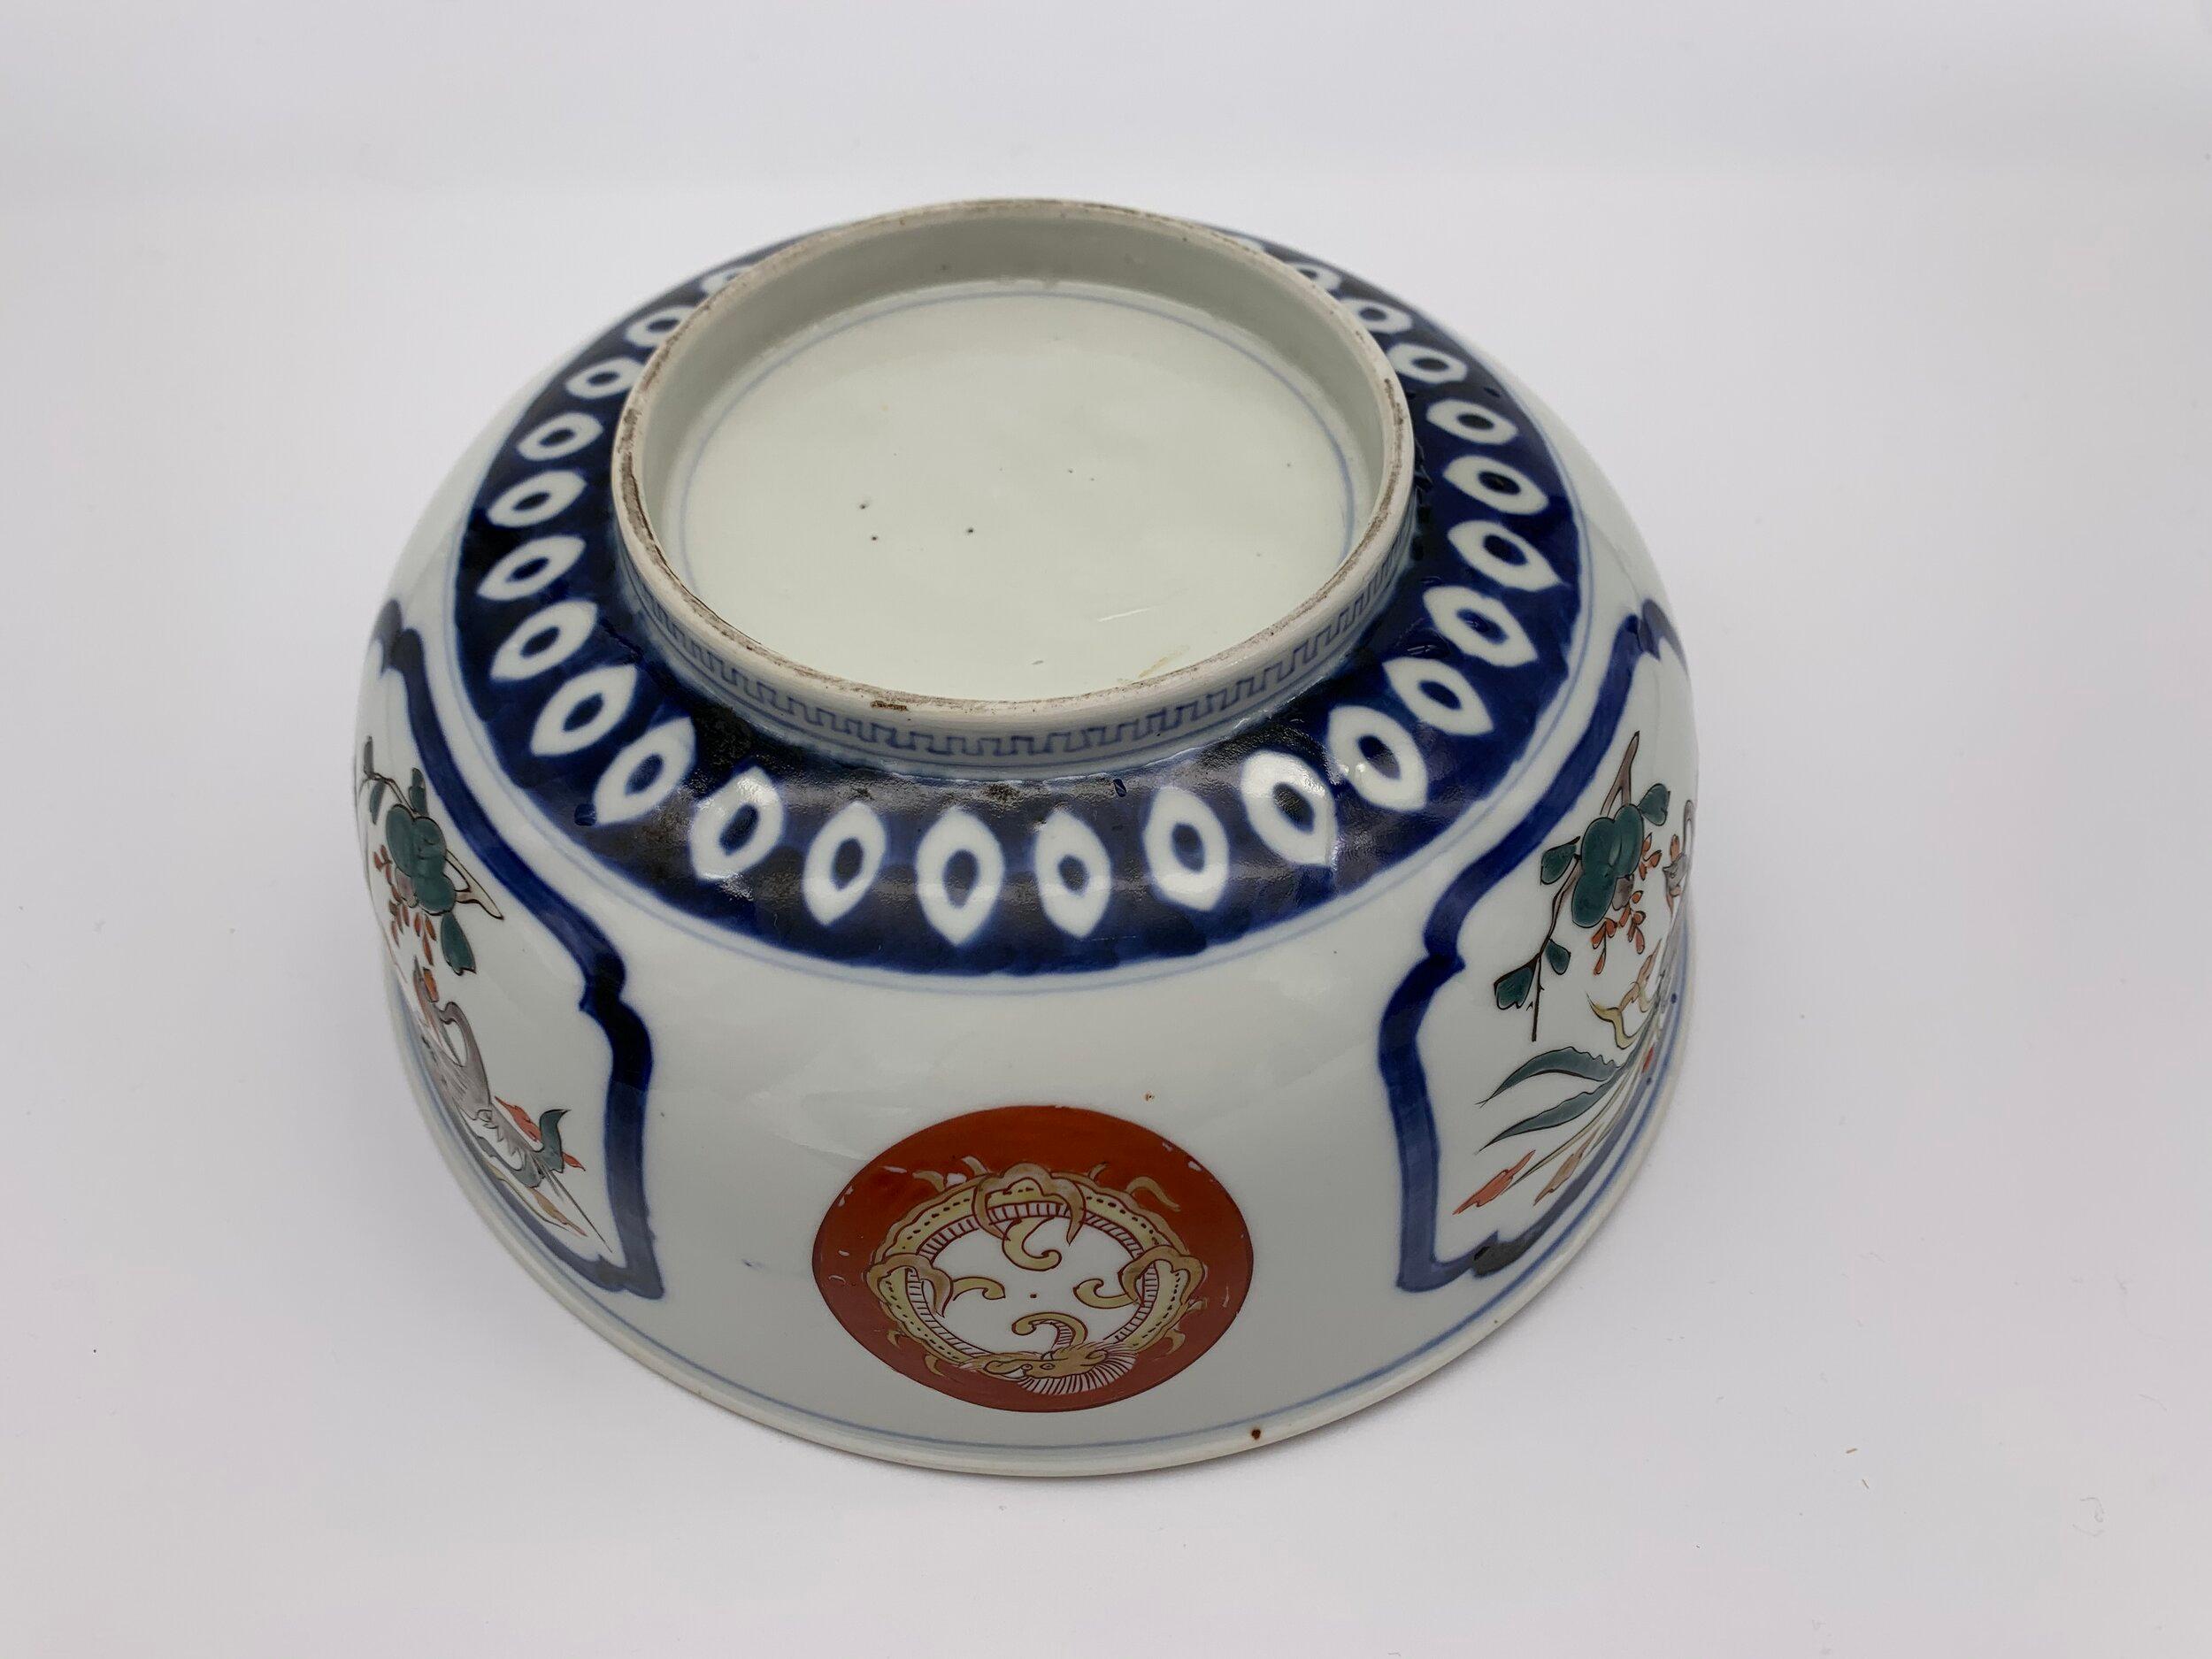 Dies ist eine Porzellanschale, die im Süden Japans hergestellt wird.
Sie wurde um 1900 in der Meiji-Ära im sogenannten Imari-Stil hergestellt.

Abmessungen:
25 x 25 x H10 cm

Imari-Ware ist eine westliche Bezeichnung für einen farbenfrohen Stil des